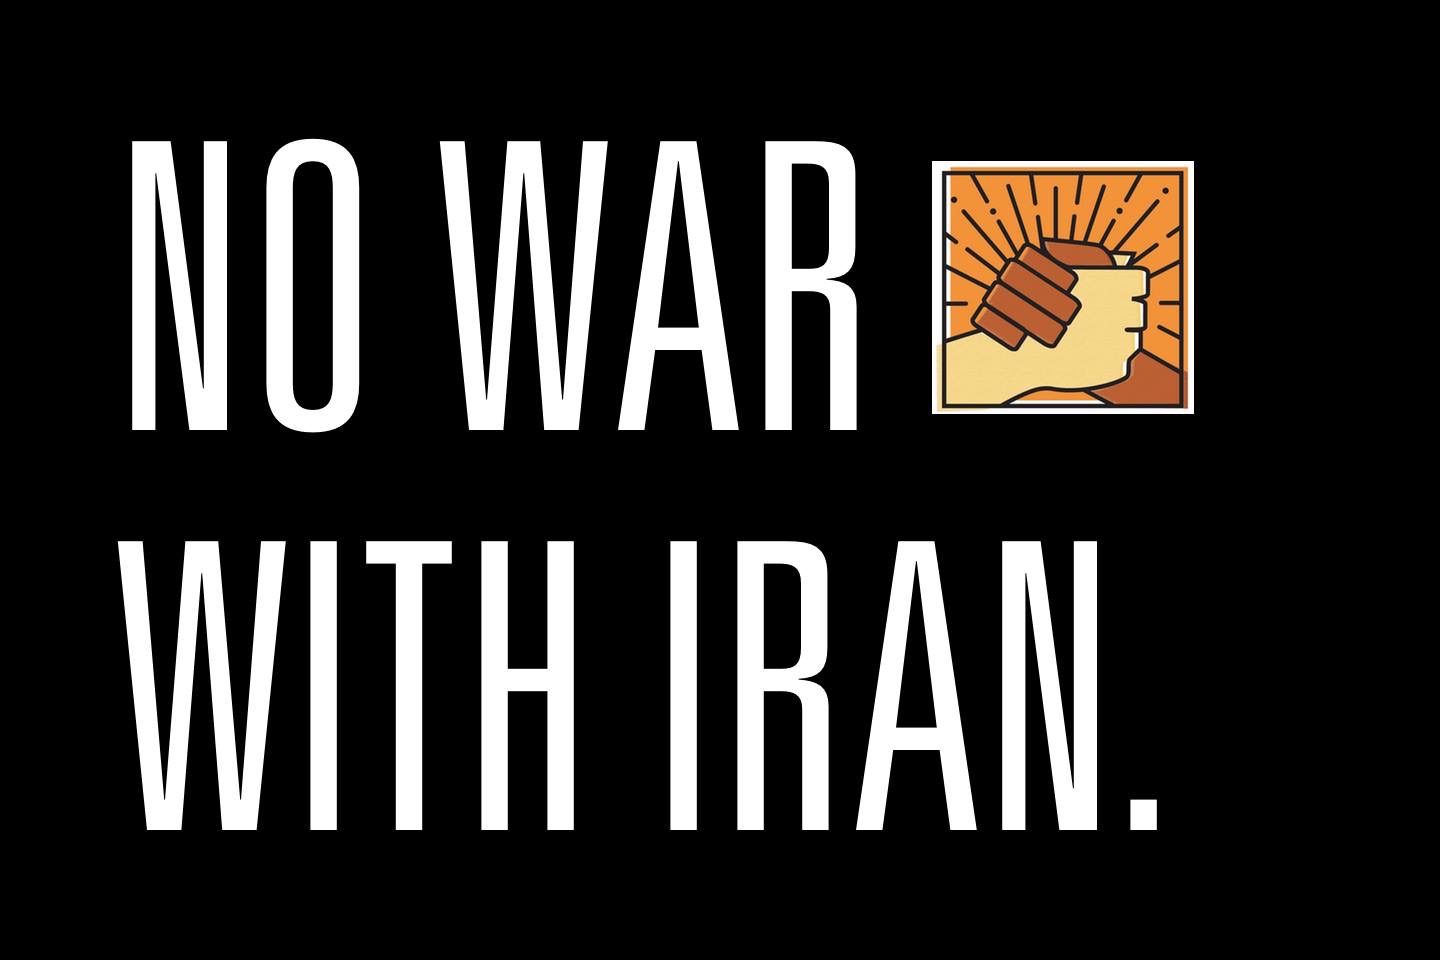 No War With Iran